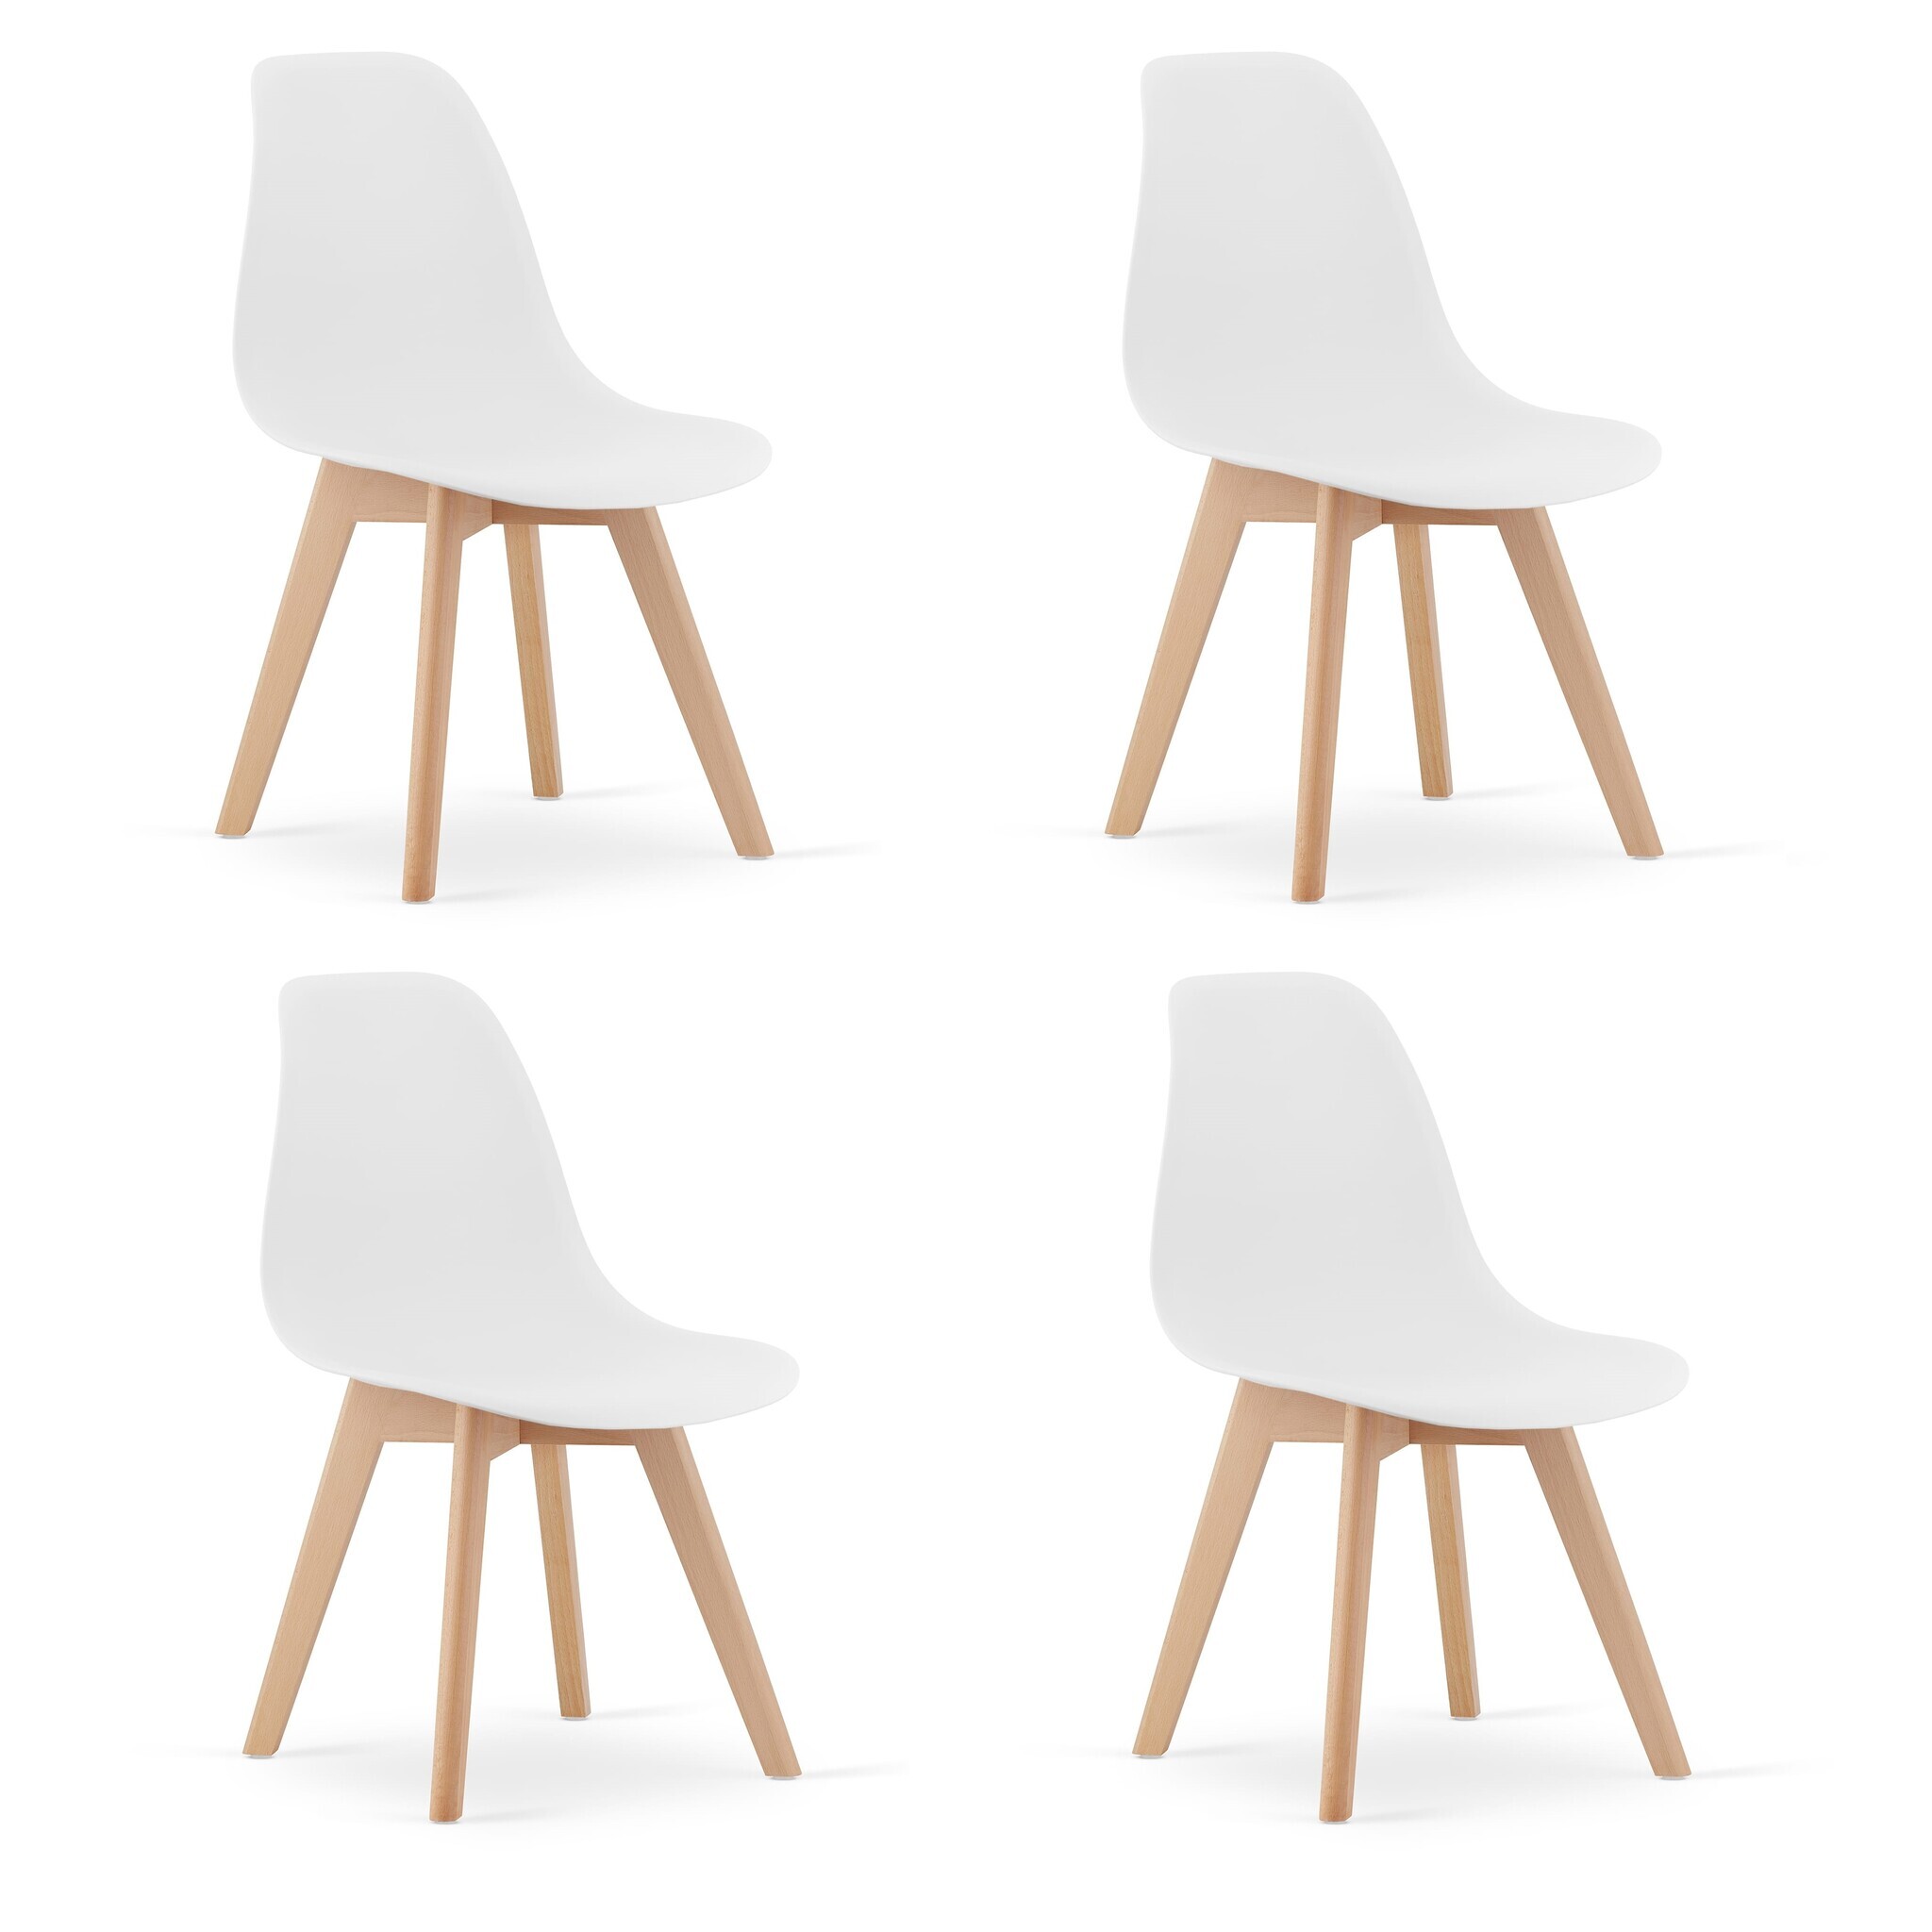 Viking Choice Eetkamerstoelen KITO - set van 4 eettafel stoelen - wit